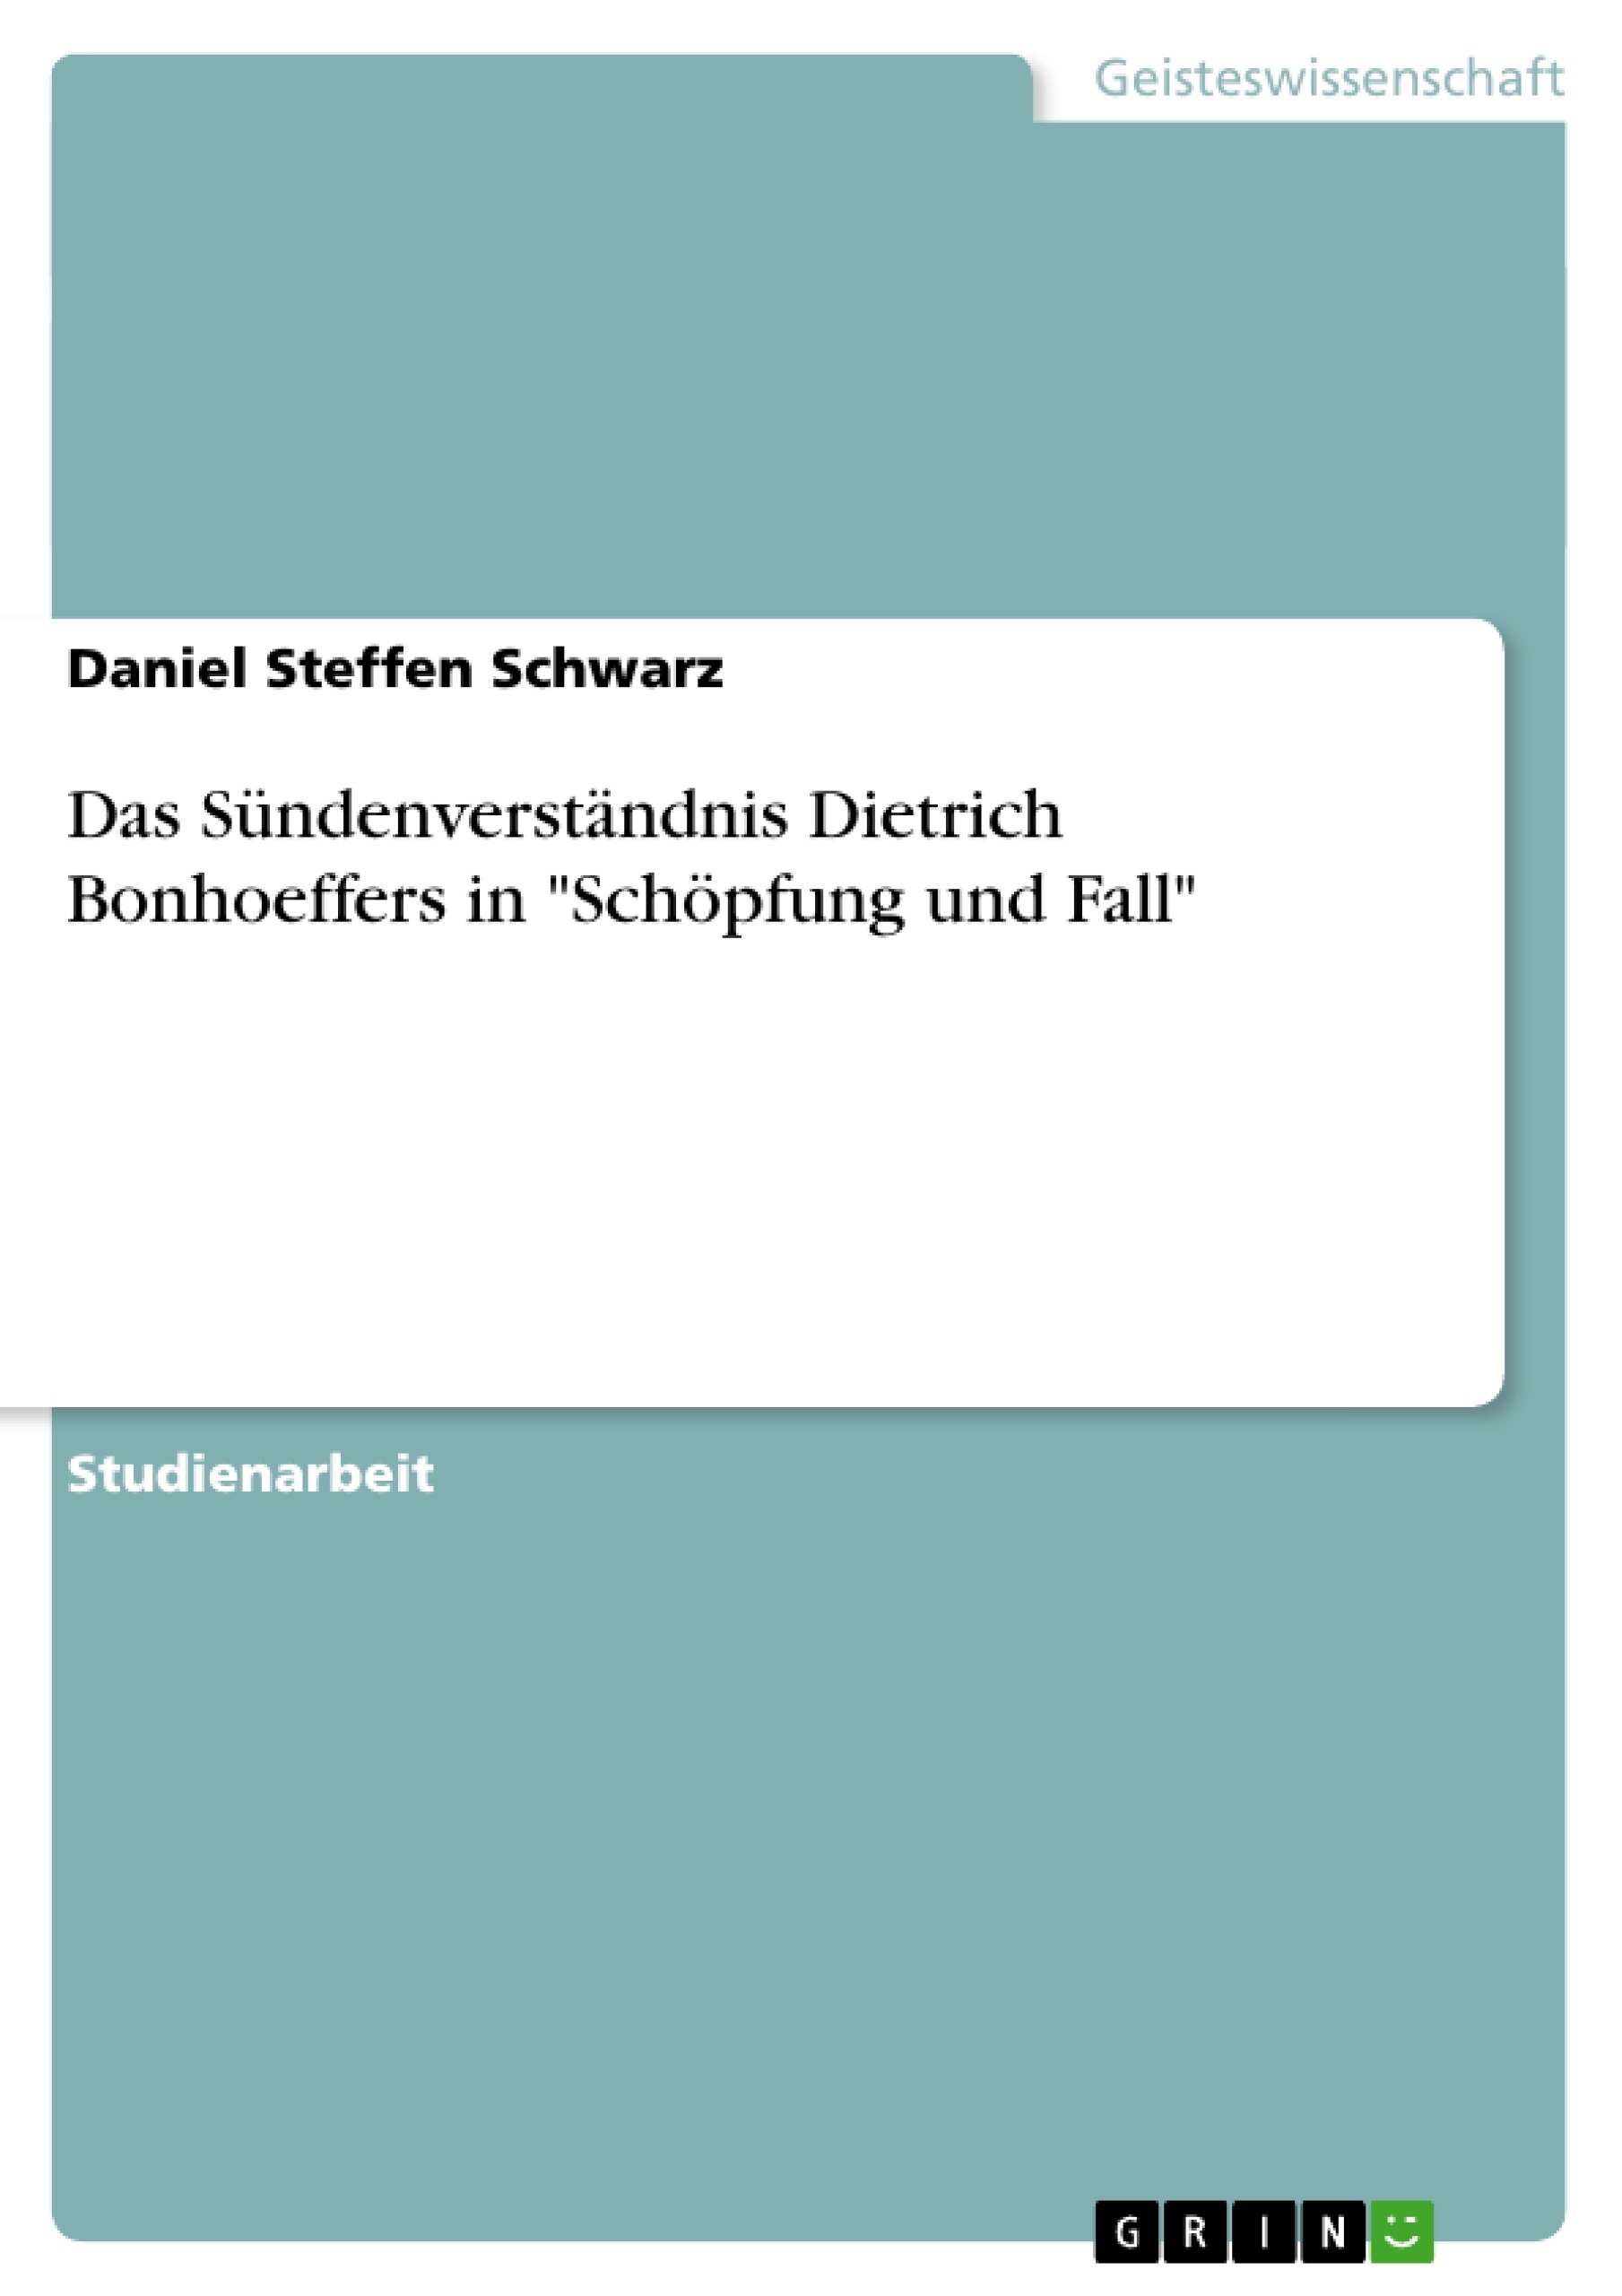 Título: Das Sündenverständnis Dietrich Bonhoeffers in "Schöpfung und Fall"